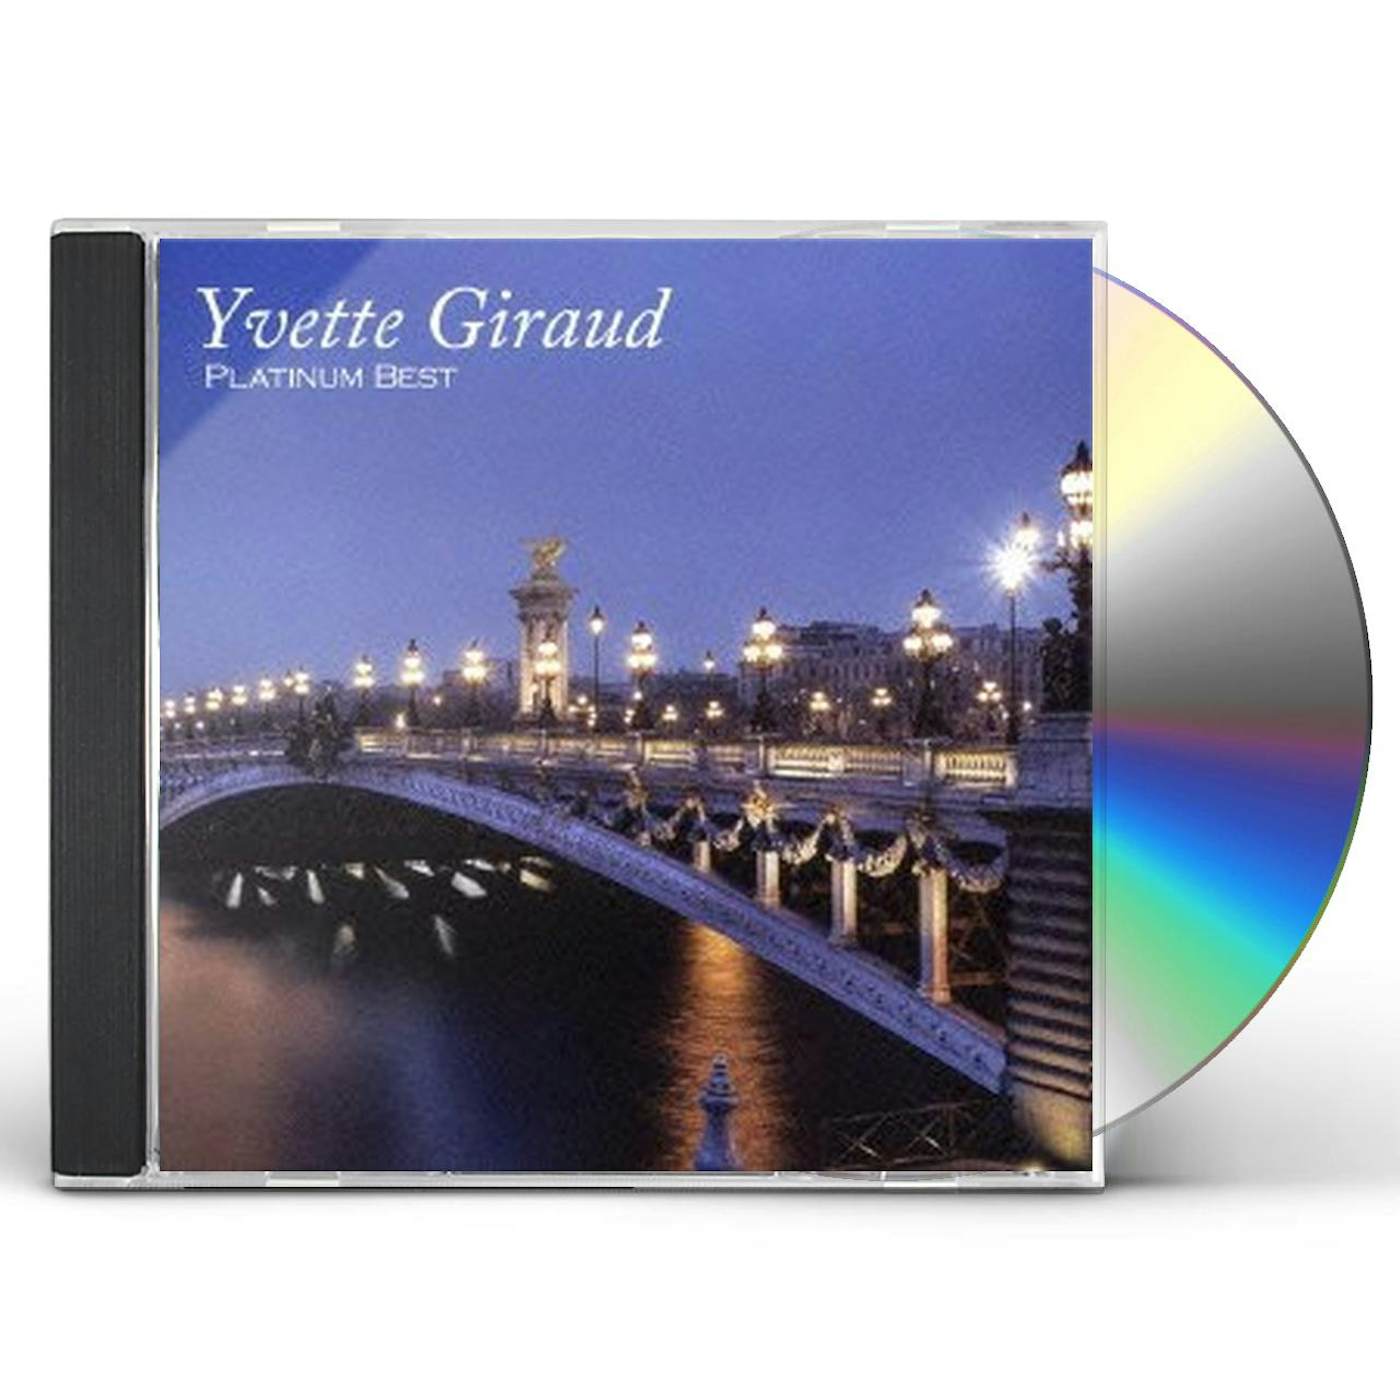 Yvette Giraud PLATINUM BEST CD